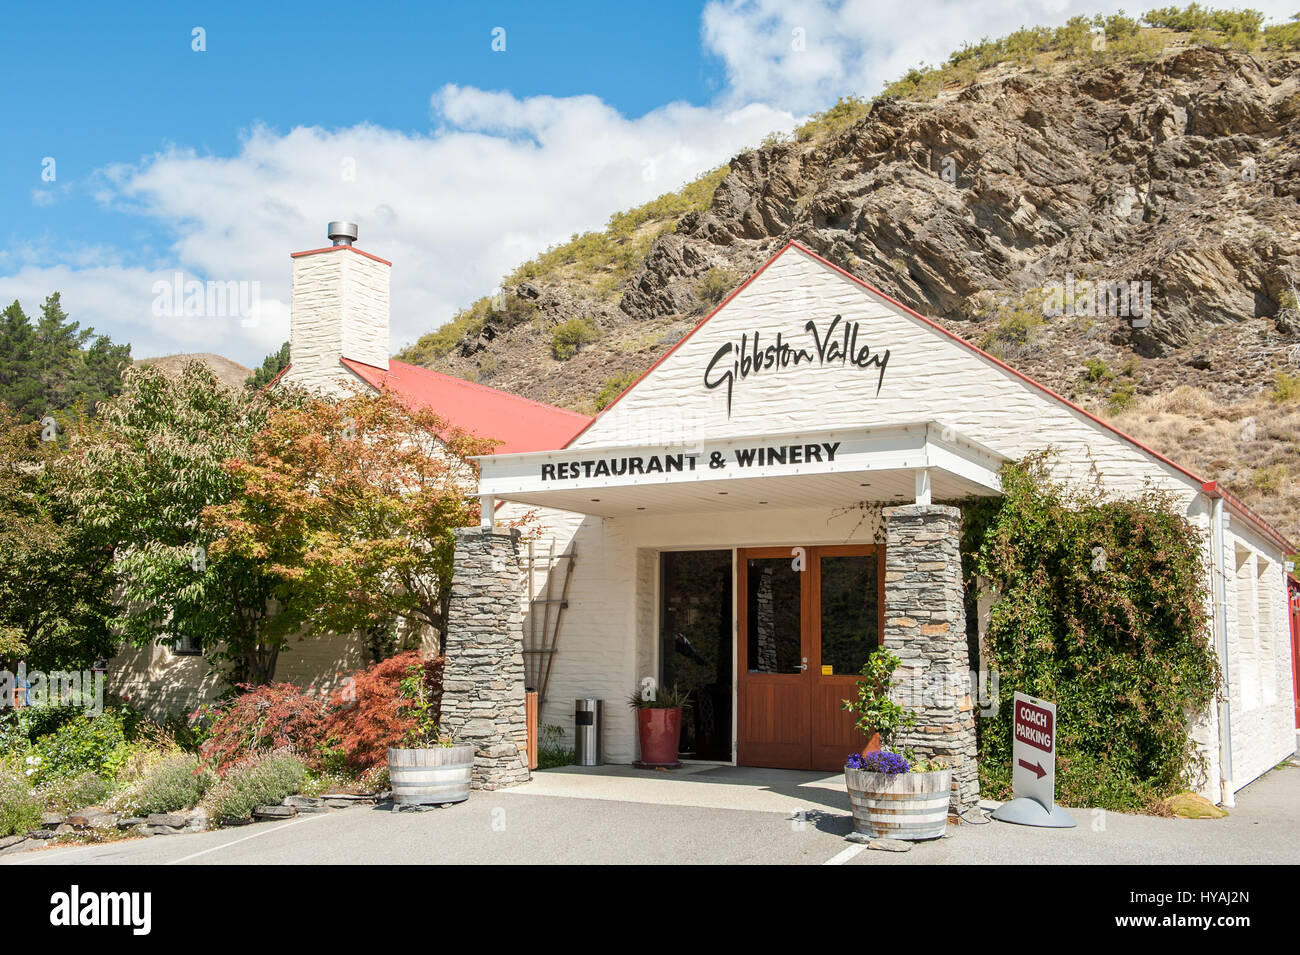 Gibbston Valley domaine viticole dans la région de Central Otago. C'est la région viticole la plus méridionale du monde et surtout célèbre pour ses pinots noirs et blancs. Banque D'Images